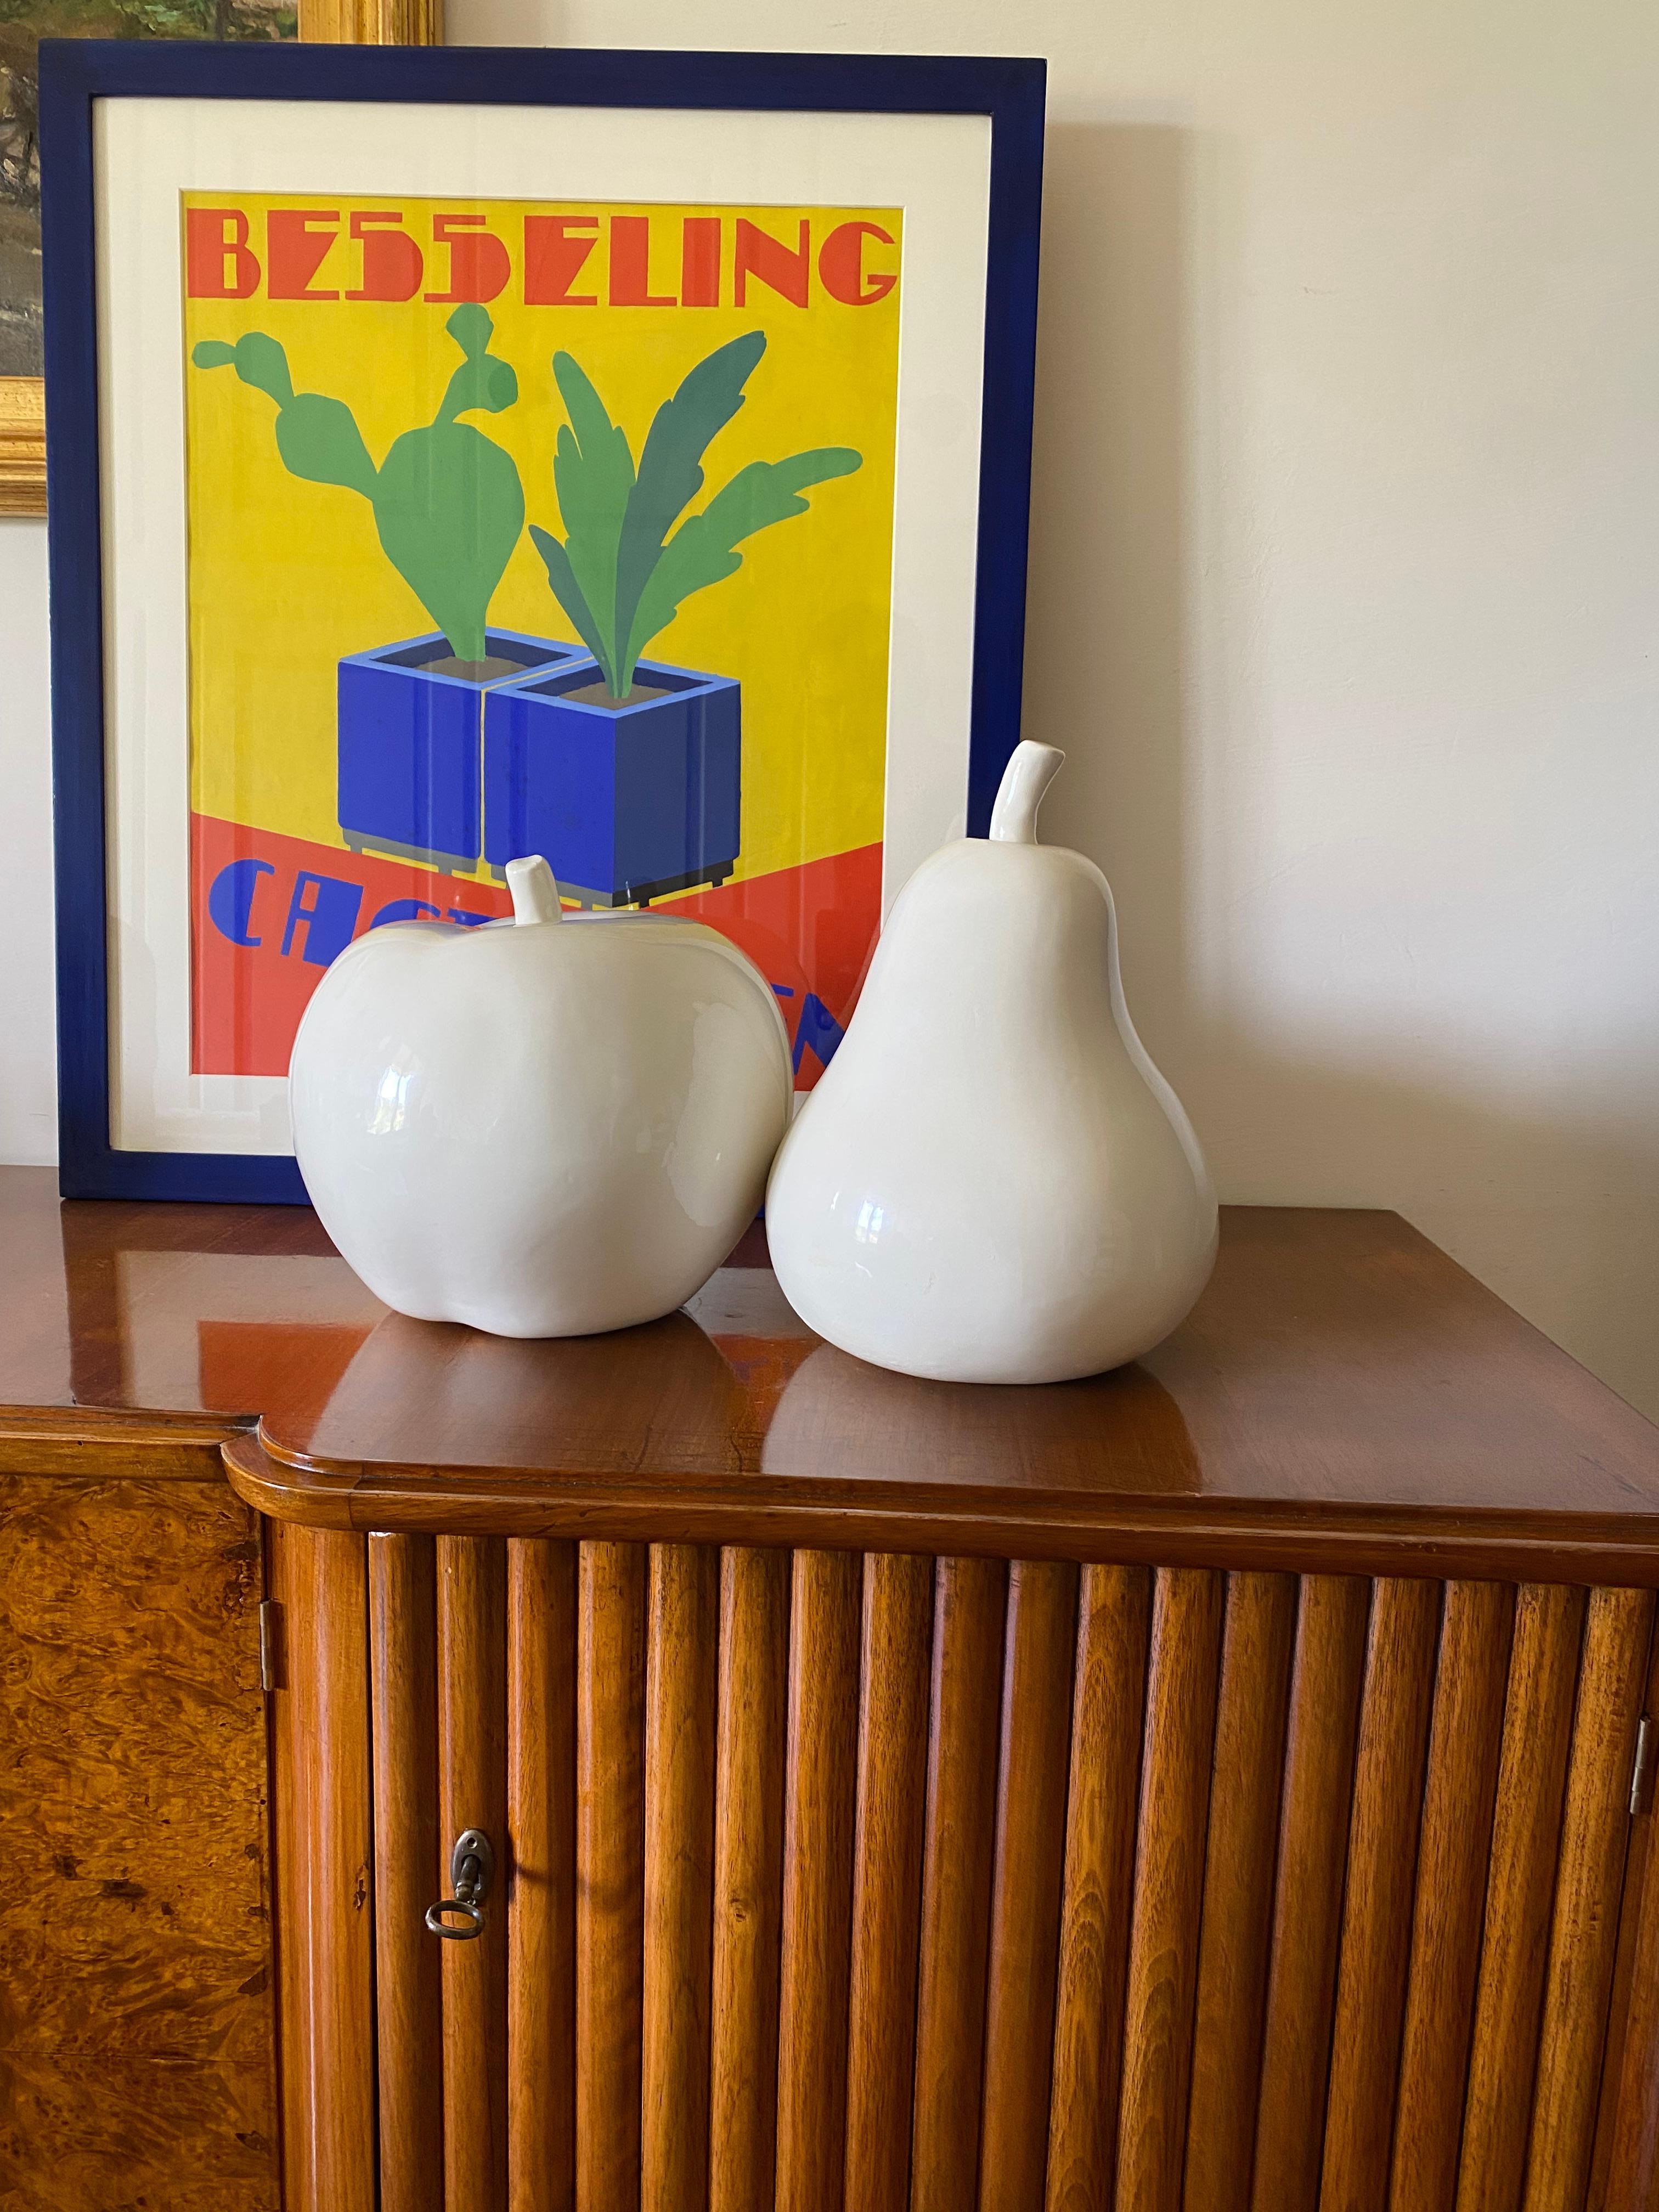 Weiße Keramikskulpturen Apfel und Birne

Italien ca. 1980

keramik

Apfel: H 26,5 cm - Durchm. 26,5 cm

Birne: H 31,5 cm - Durchm. 21 cm

Zustand: ausgezeichnet keine Mängel